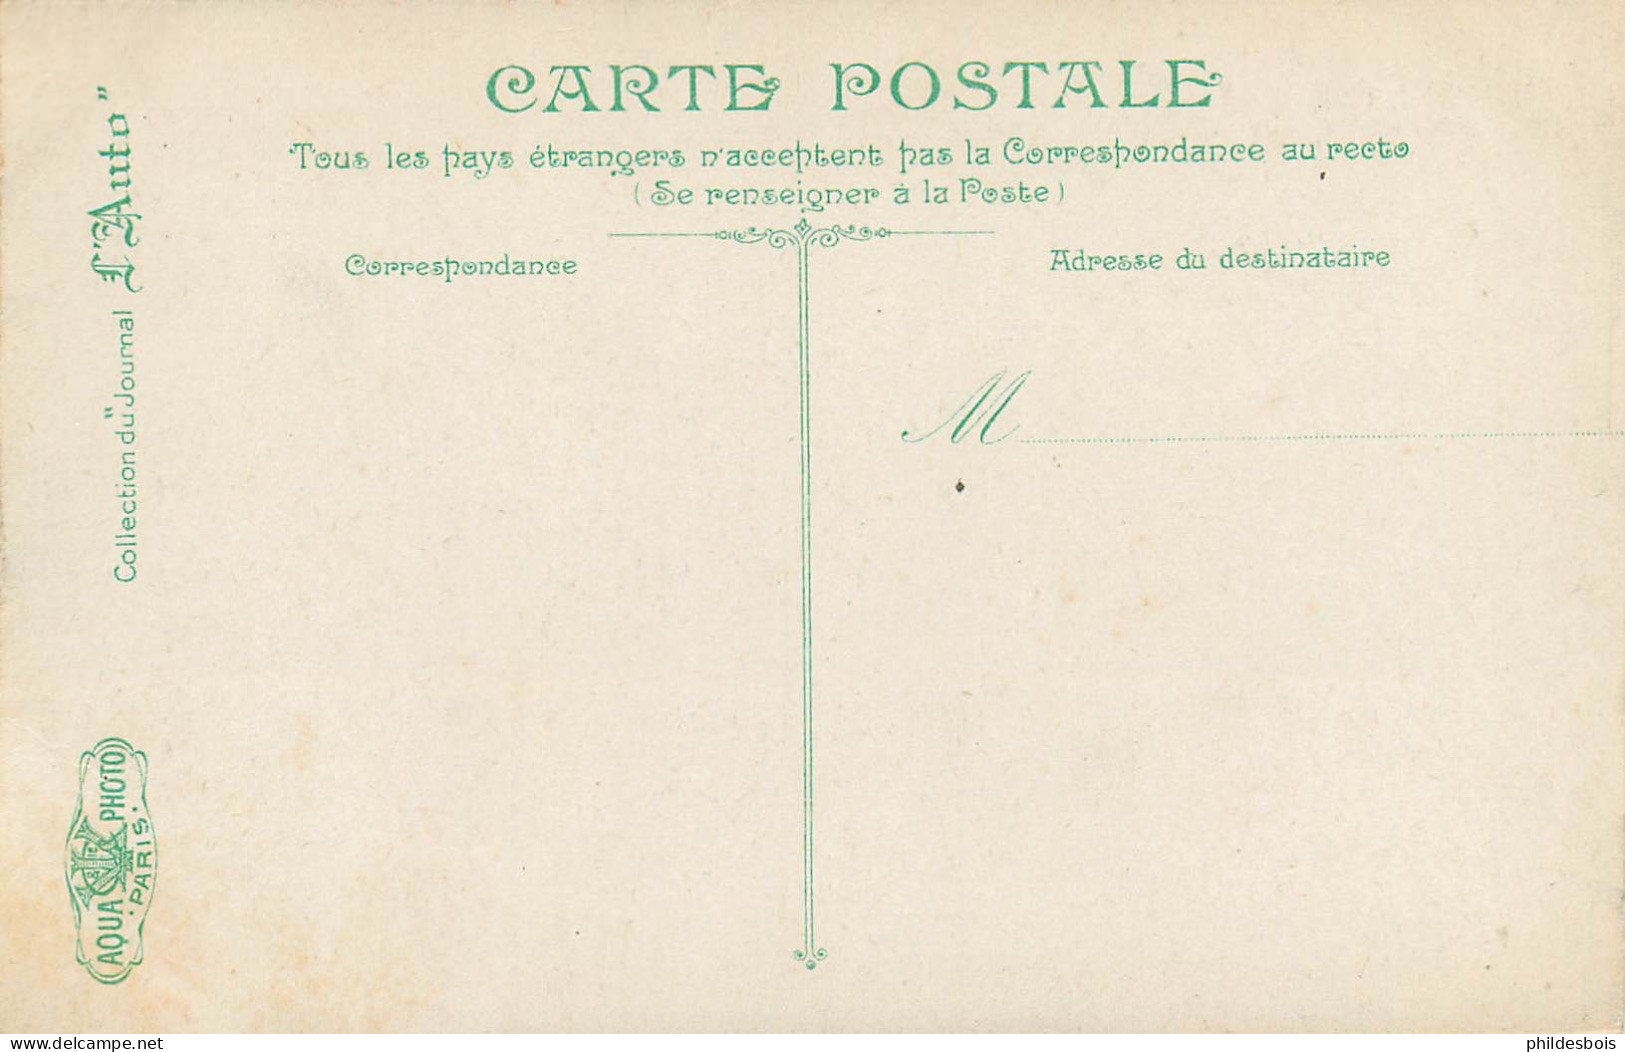 AUTOMOBILE   CIRCUIT de la Seine Inferieure ( serie complete 30 cartes )  Tres bon état "collection du journal L'AUTO "